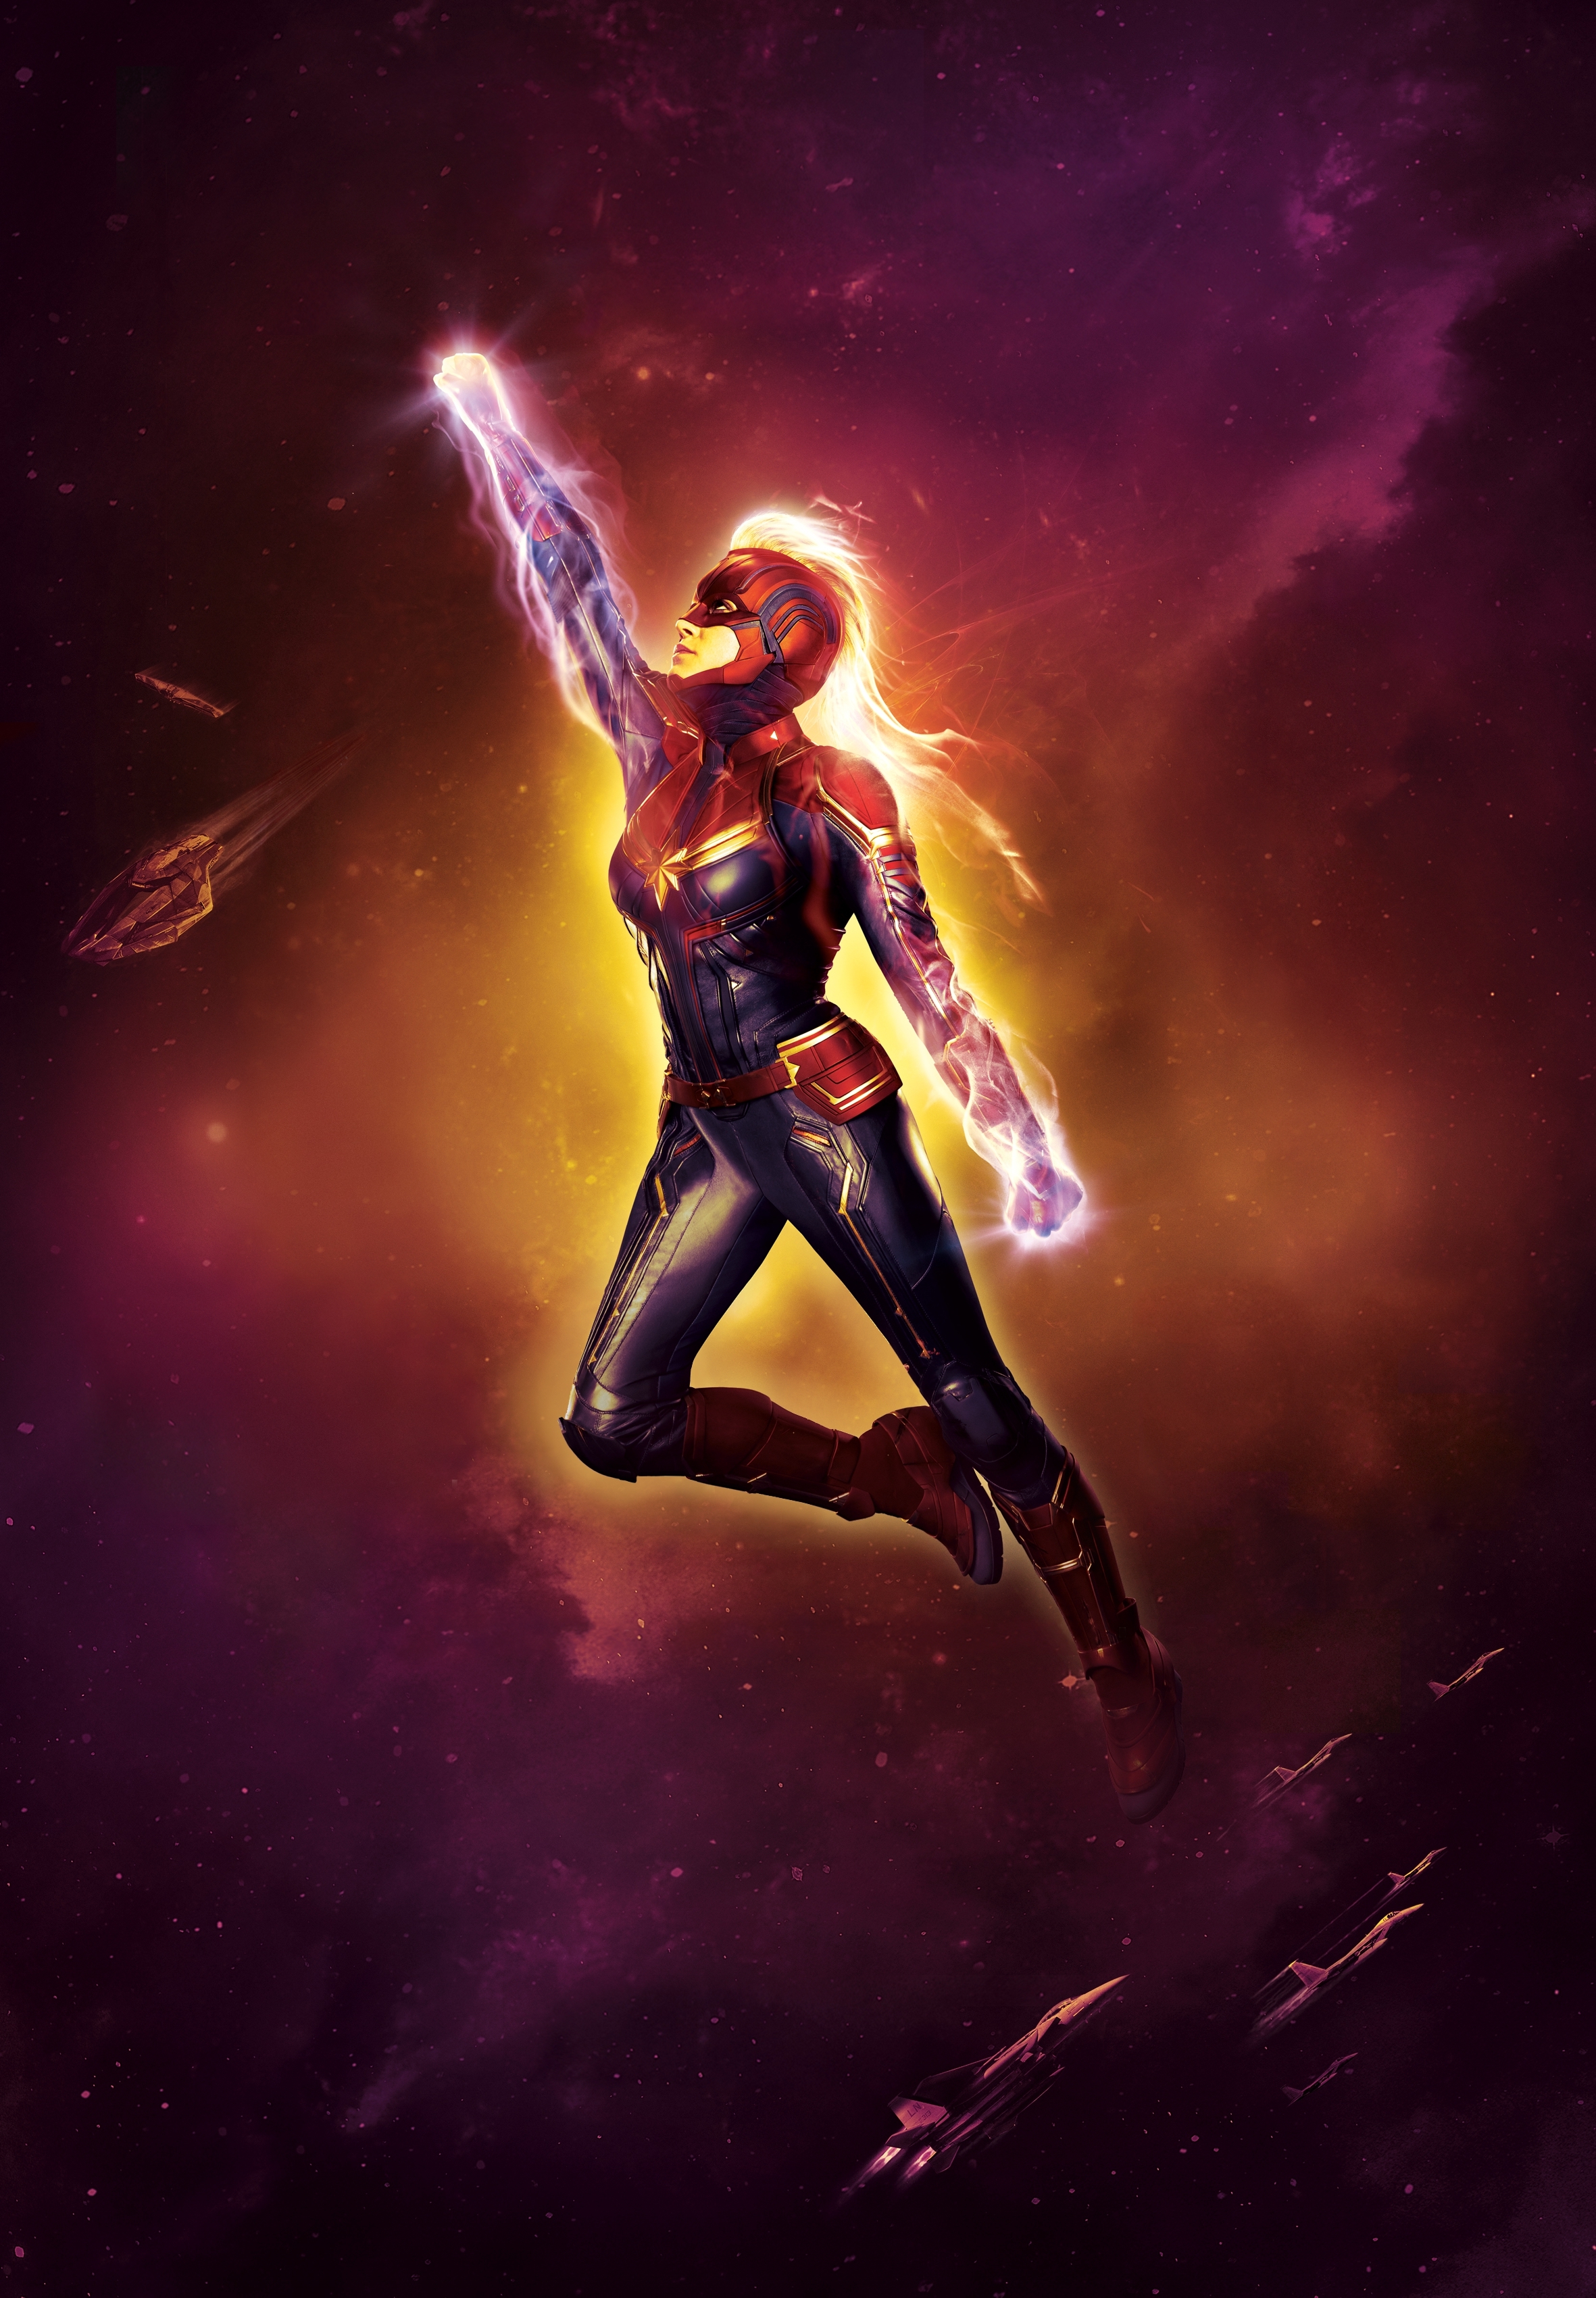 Captain Marvel Poster Wallpaper